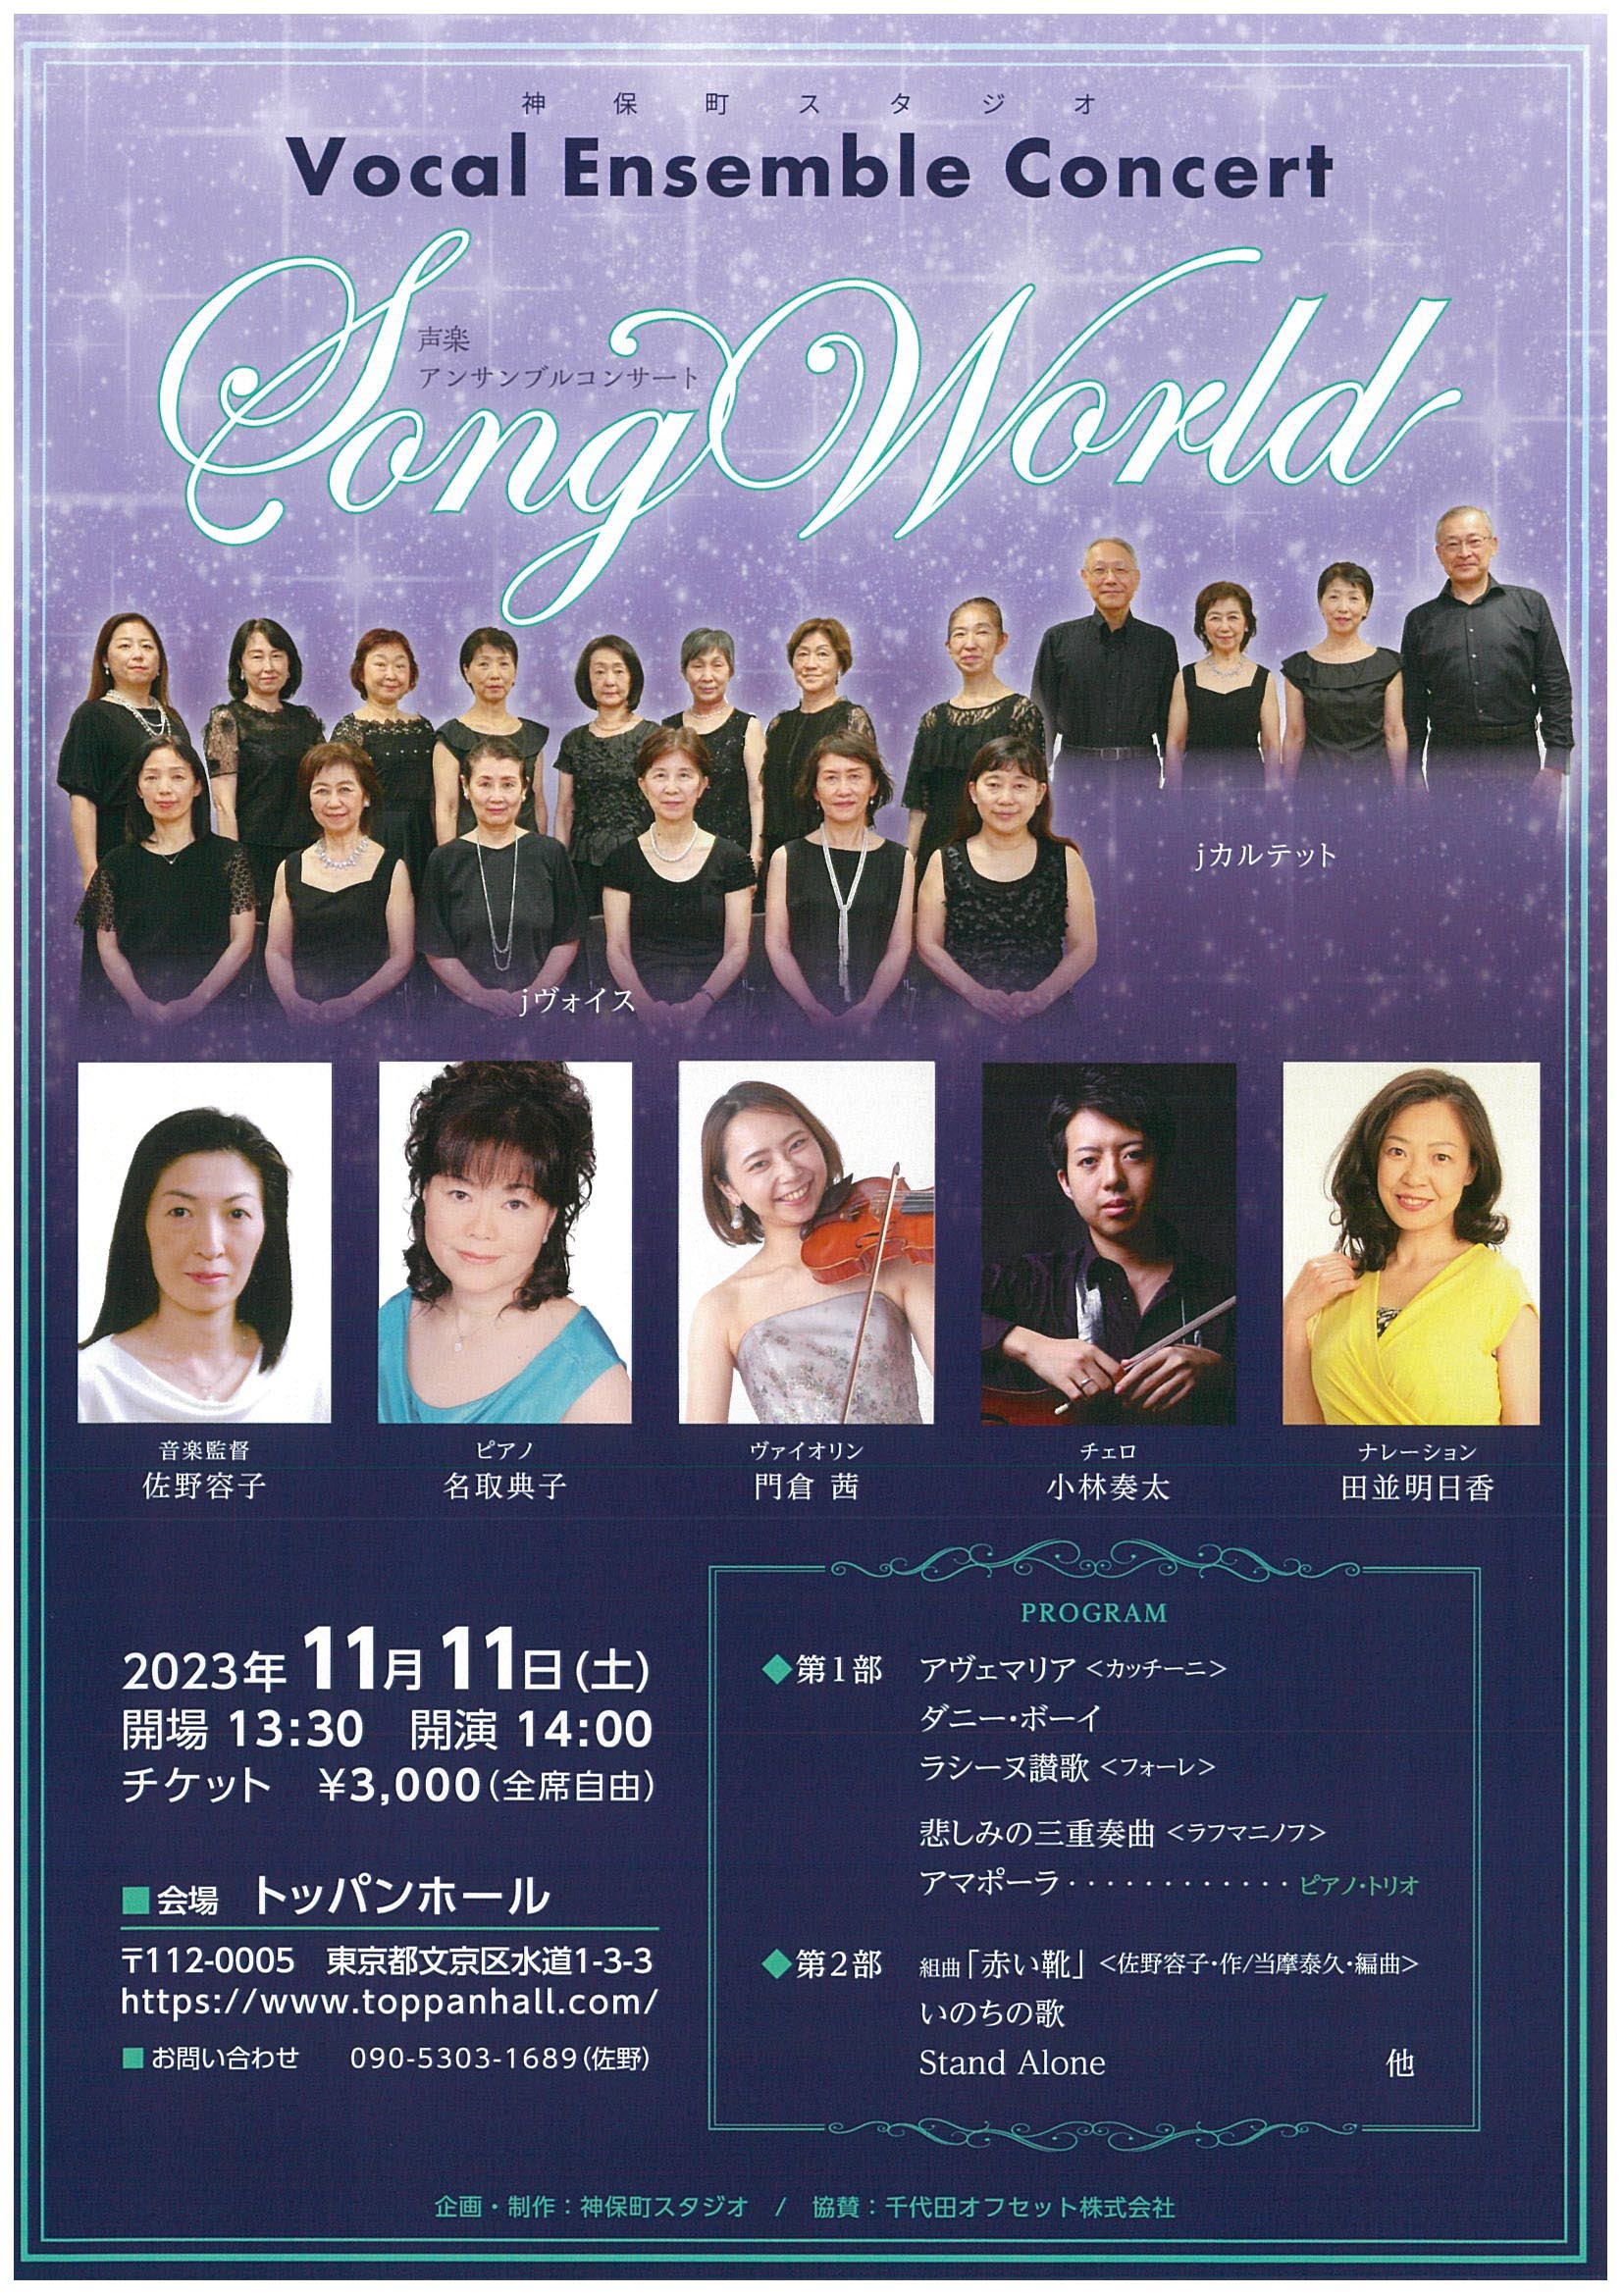 Vocal Ensemble Concert